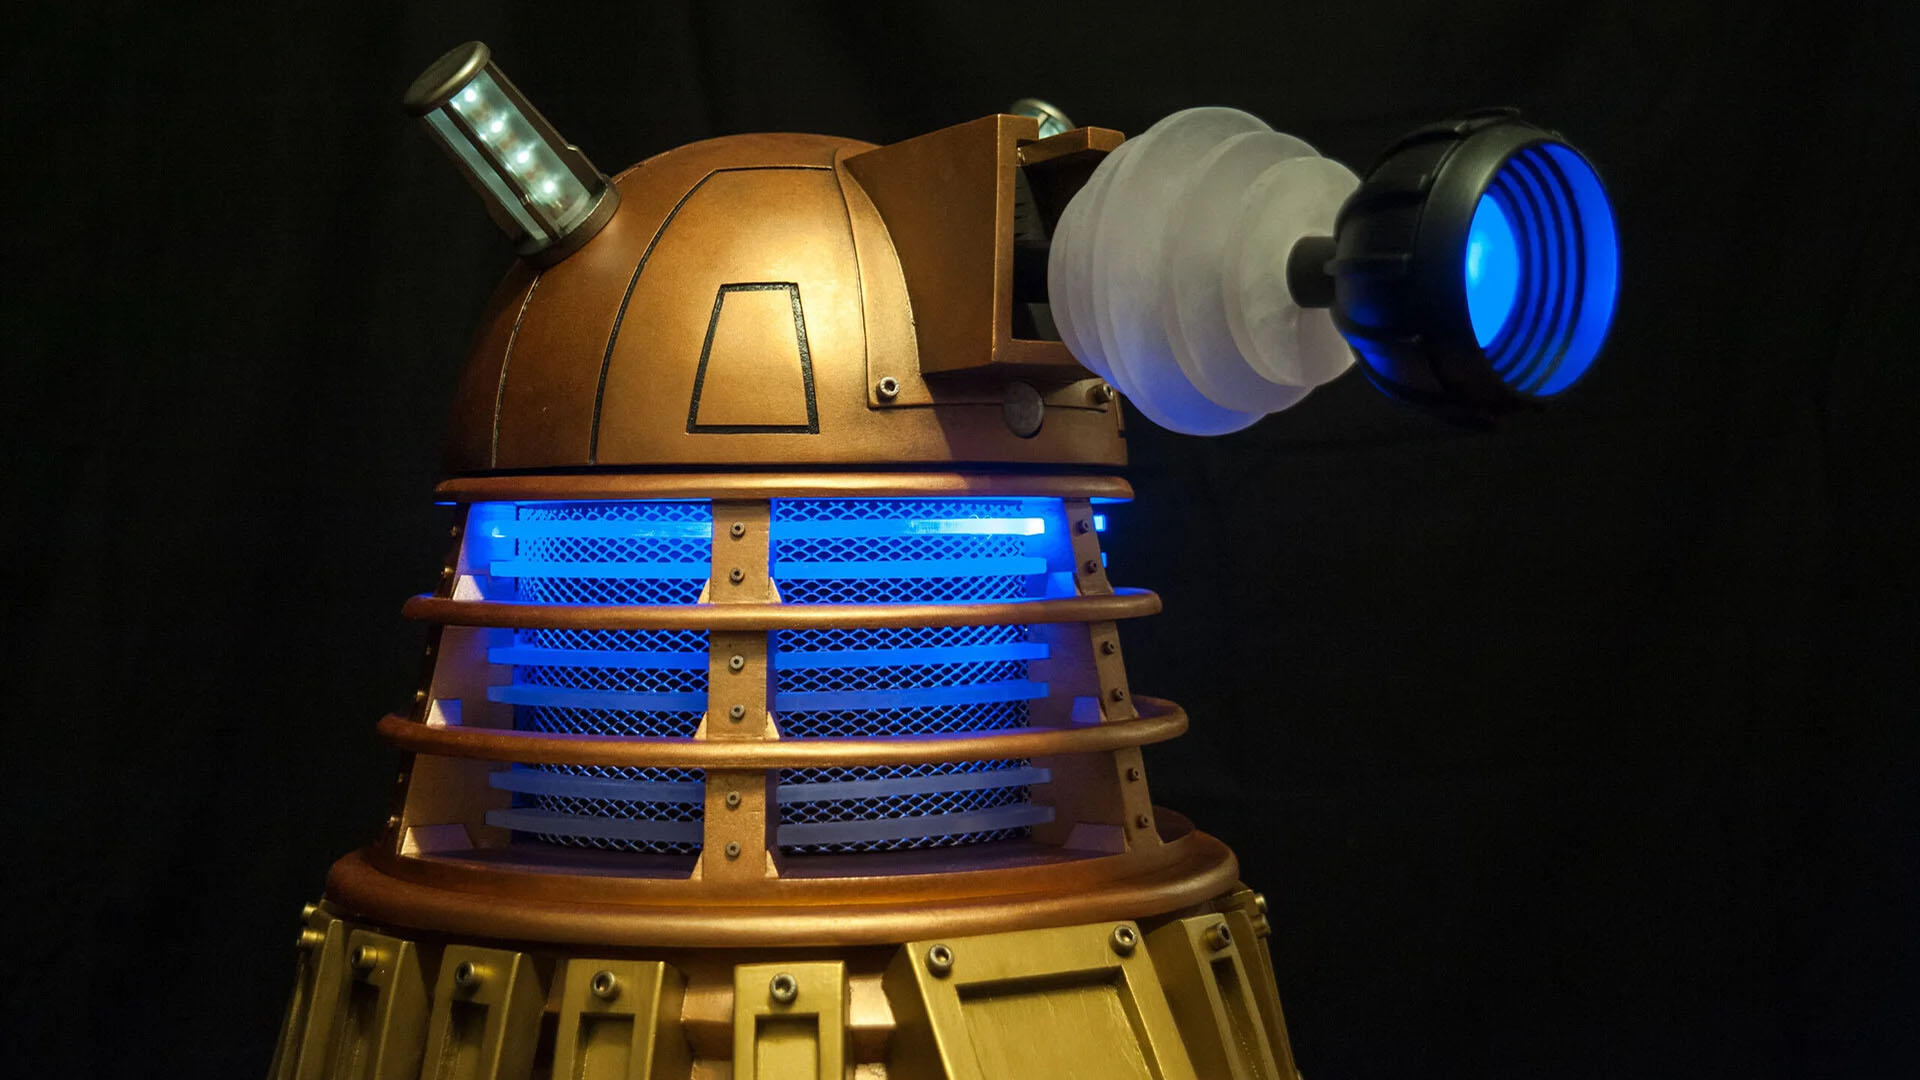 Doctor Who Dalek oyun bilgisayarı: Kafanın yakından görünümü